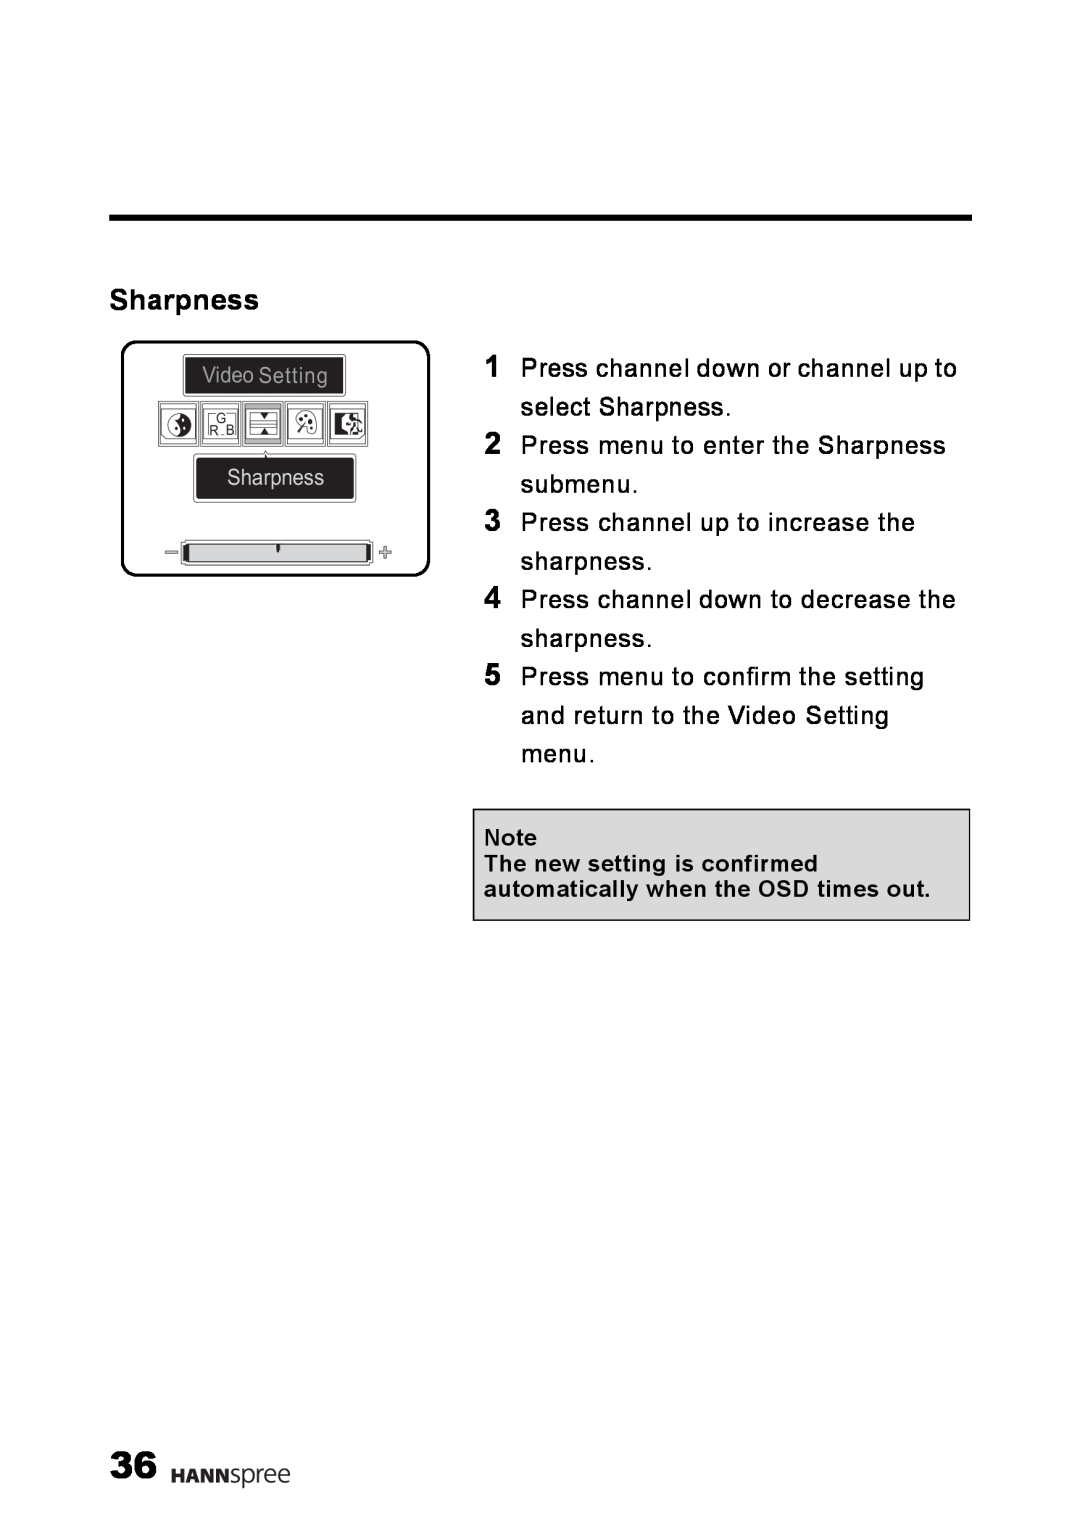 HANNspree LT02-12U1-000 user manual Sharpness, Video Setting, G R B 